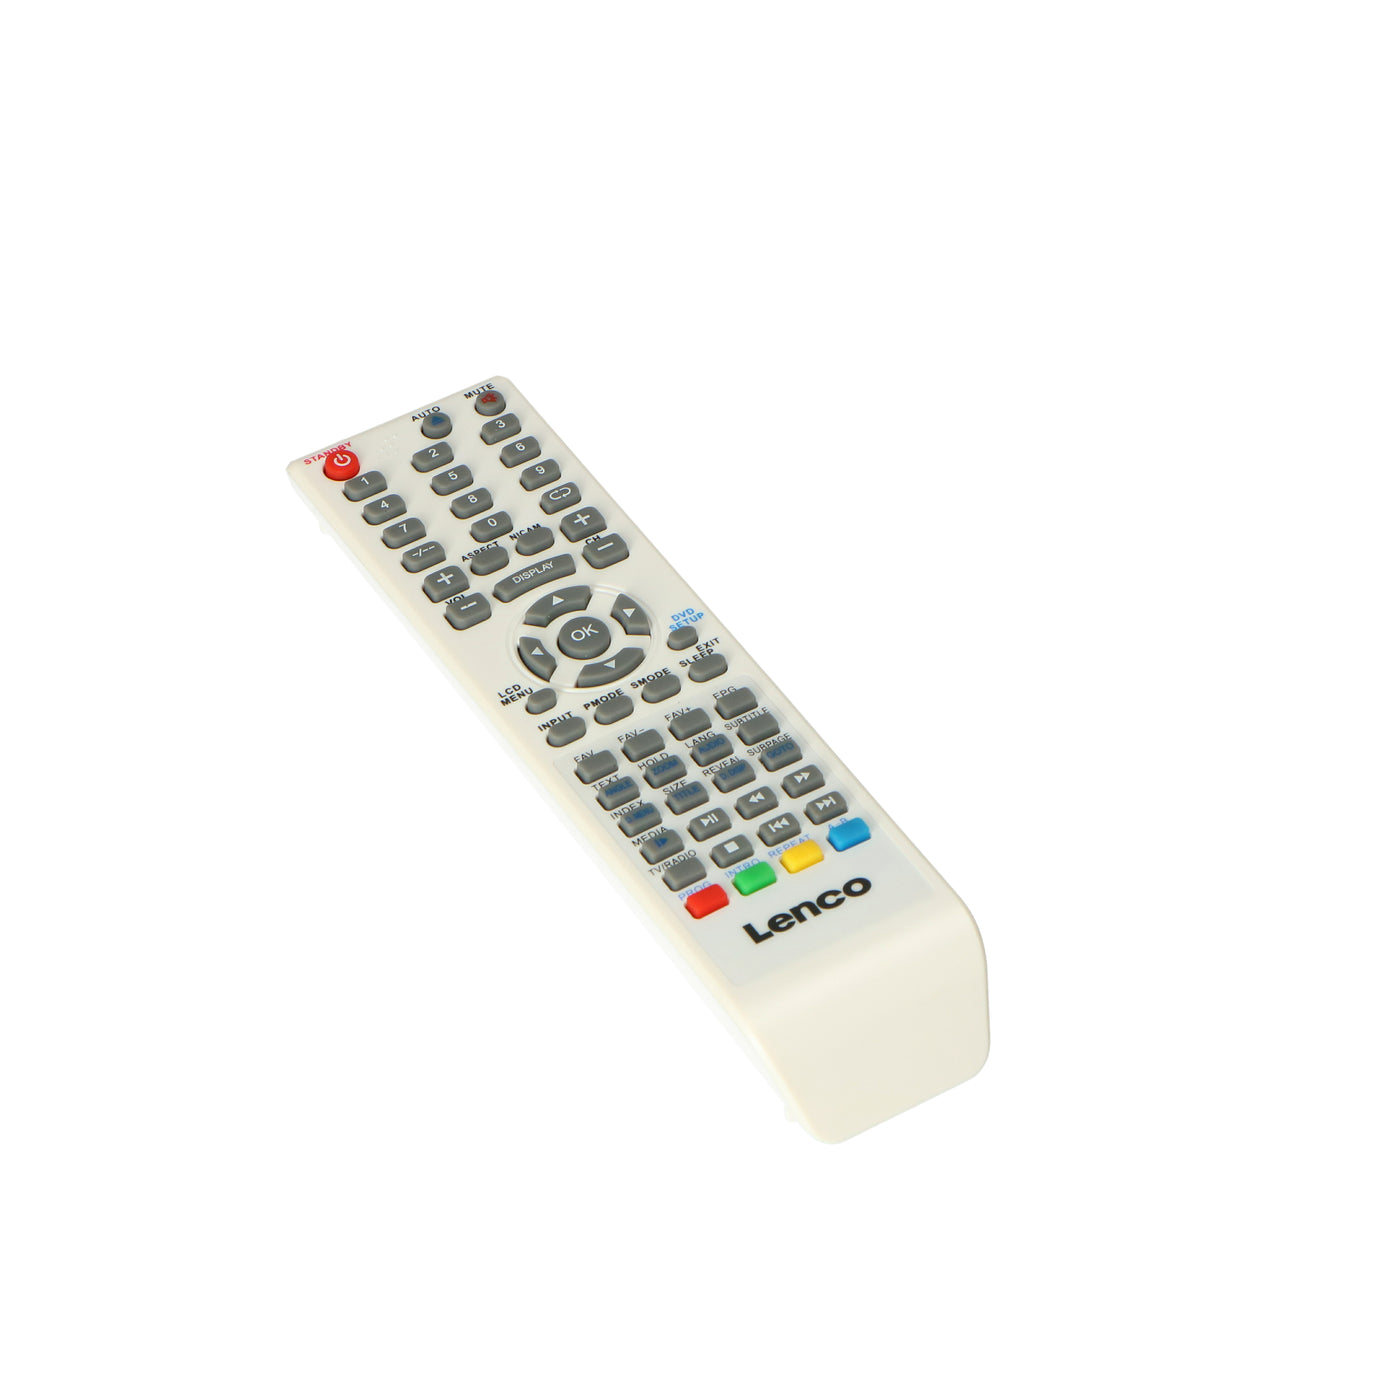 P001501 - Remote control white DVT-2632